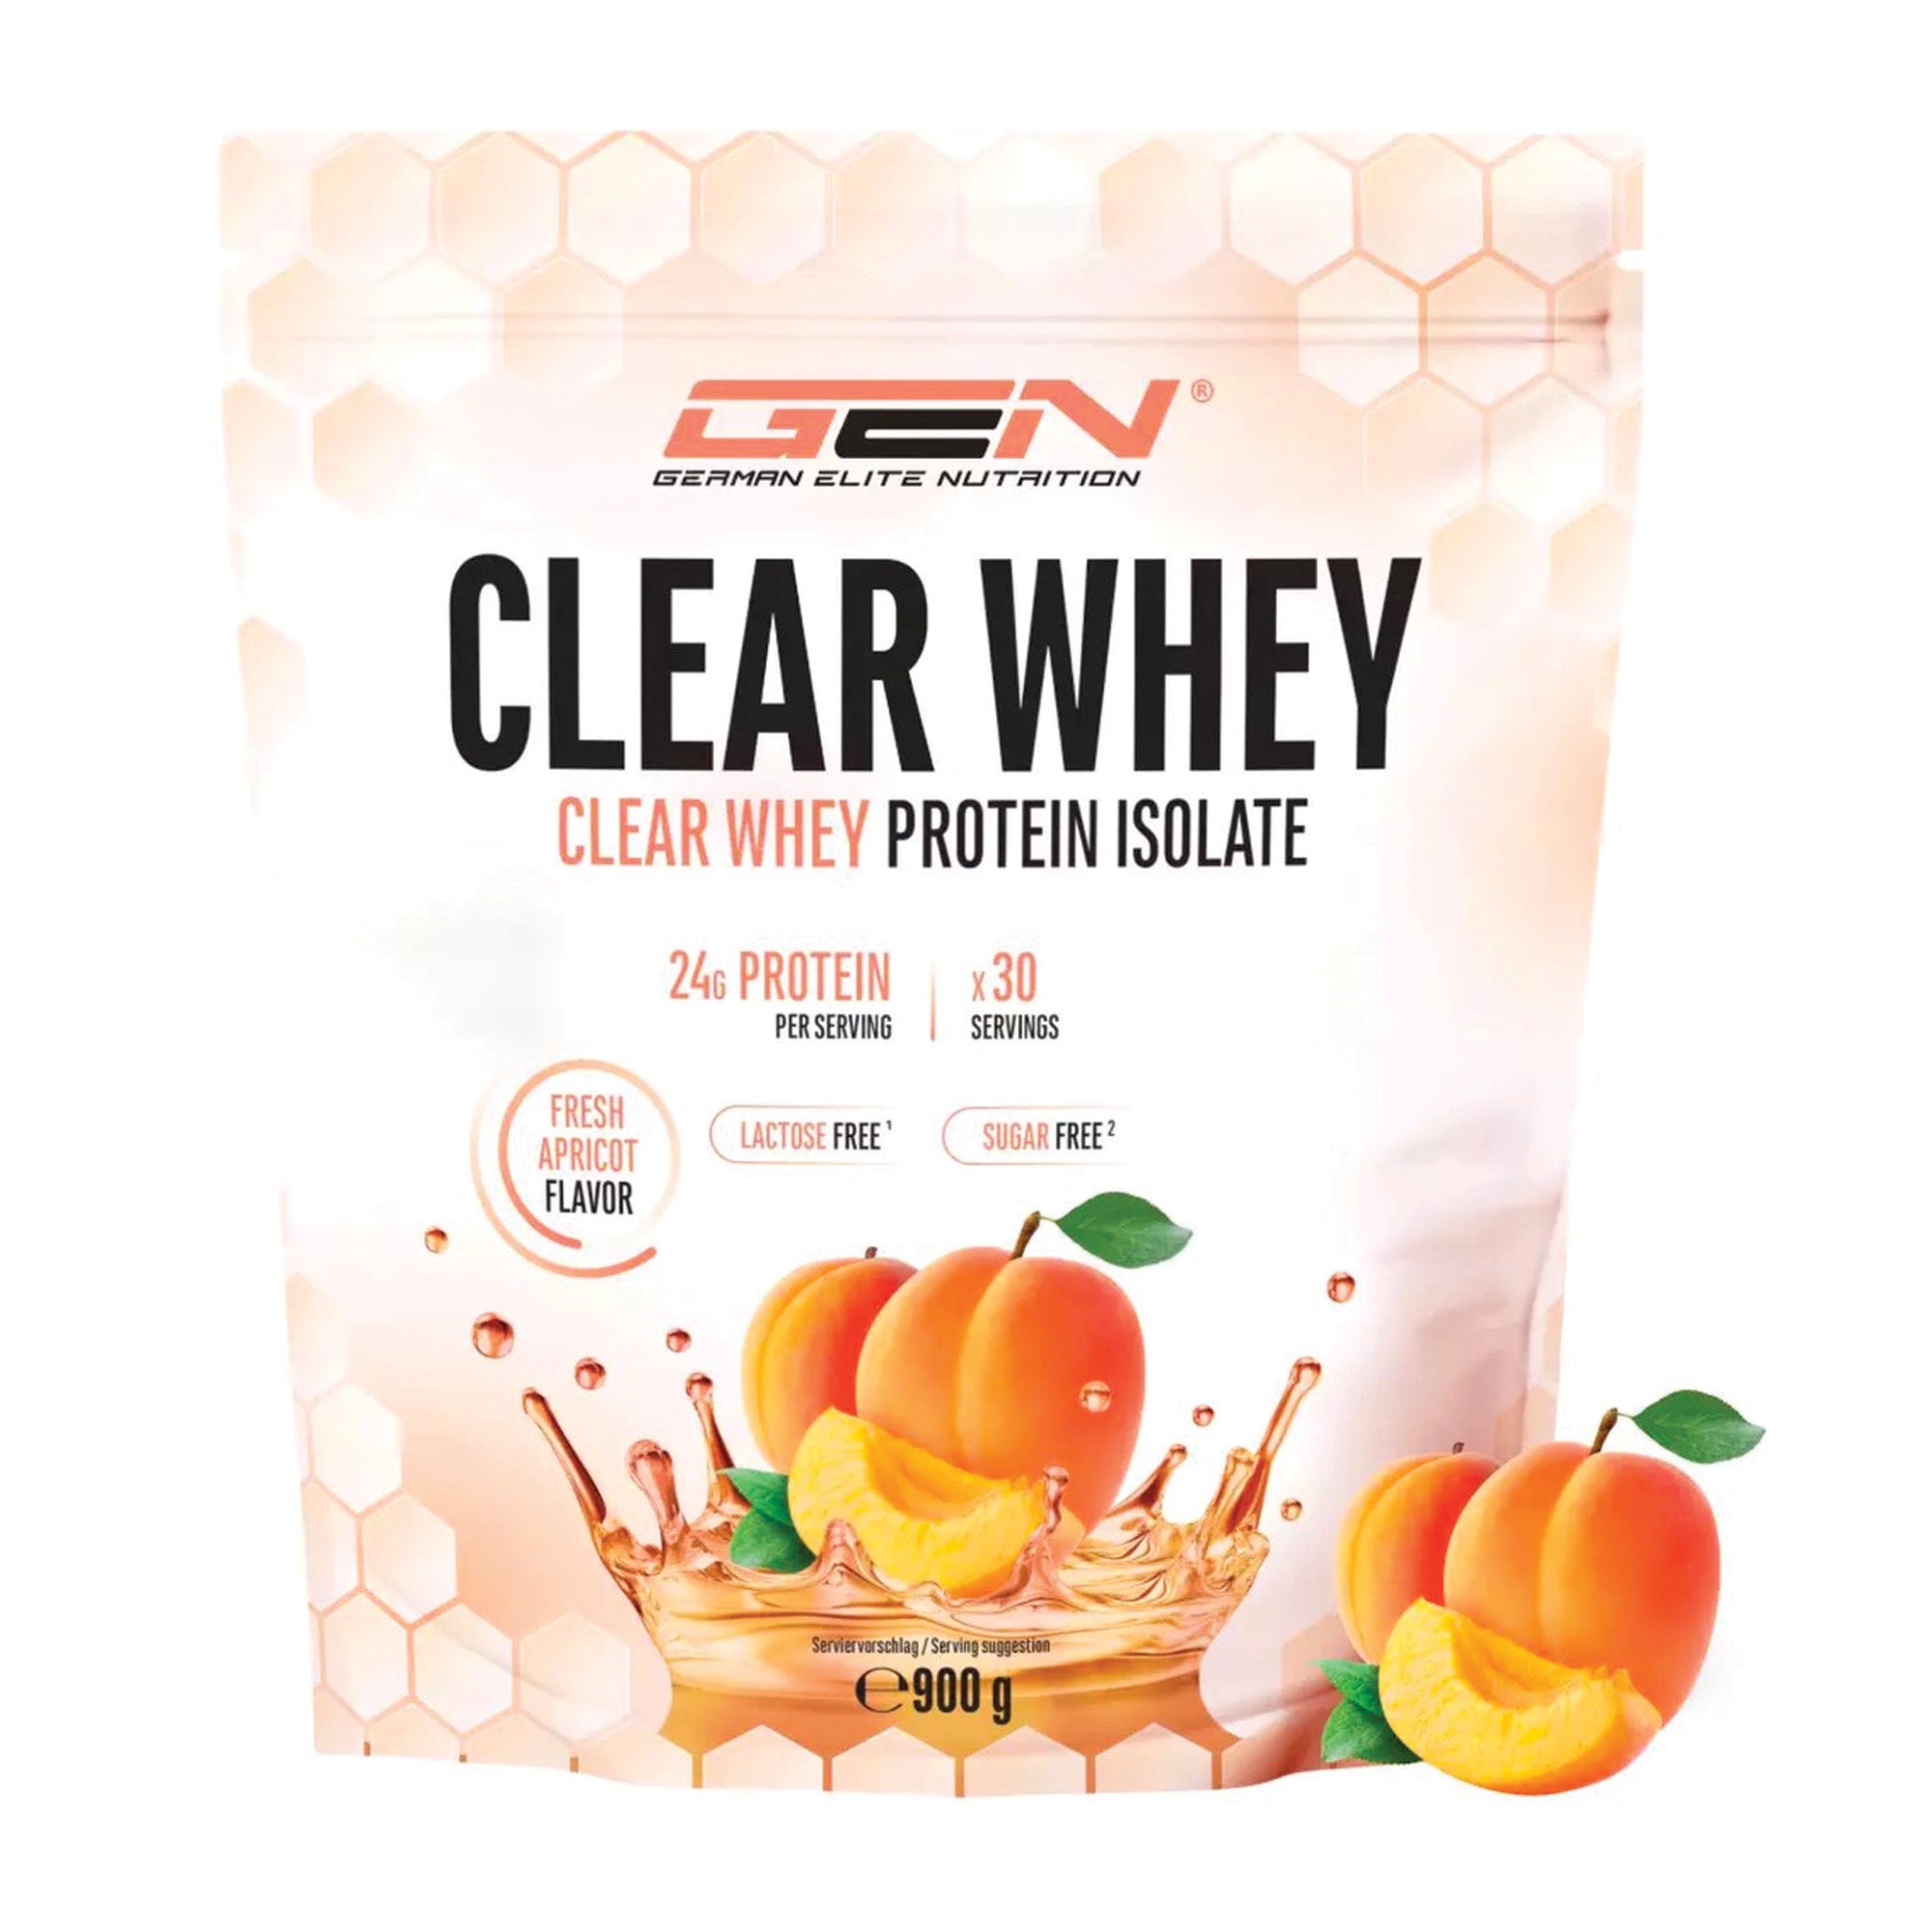 Clear Whey Isolaat - Eiwitshake - Proteïne Ranja - Abrikoos smaak - 30 Servings - 900 g - 24g proteïne per serving - Verfrissend proteïne shake